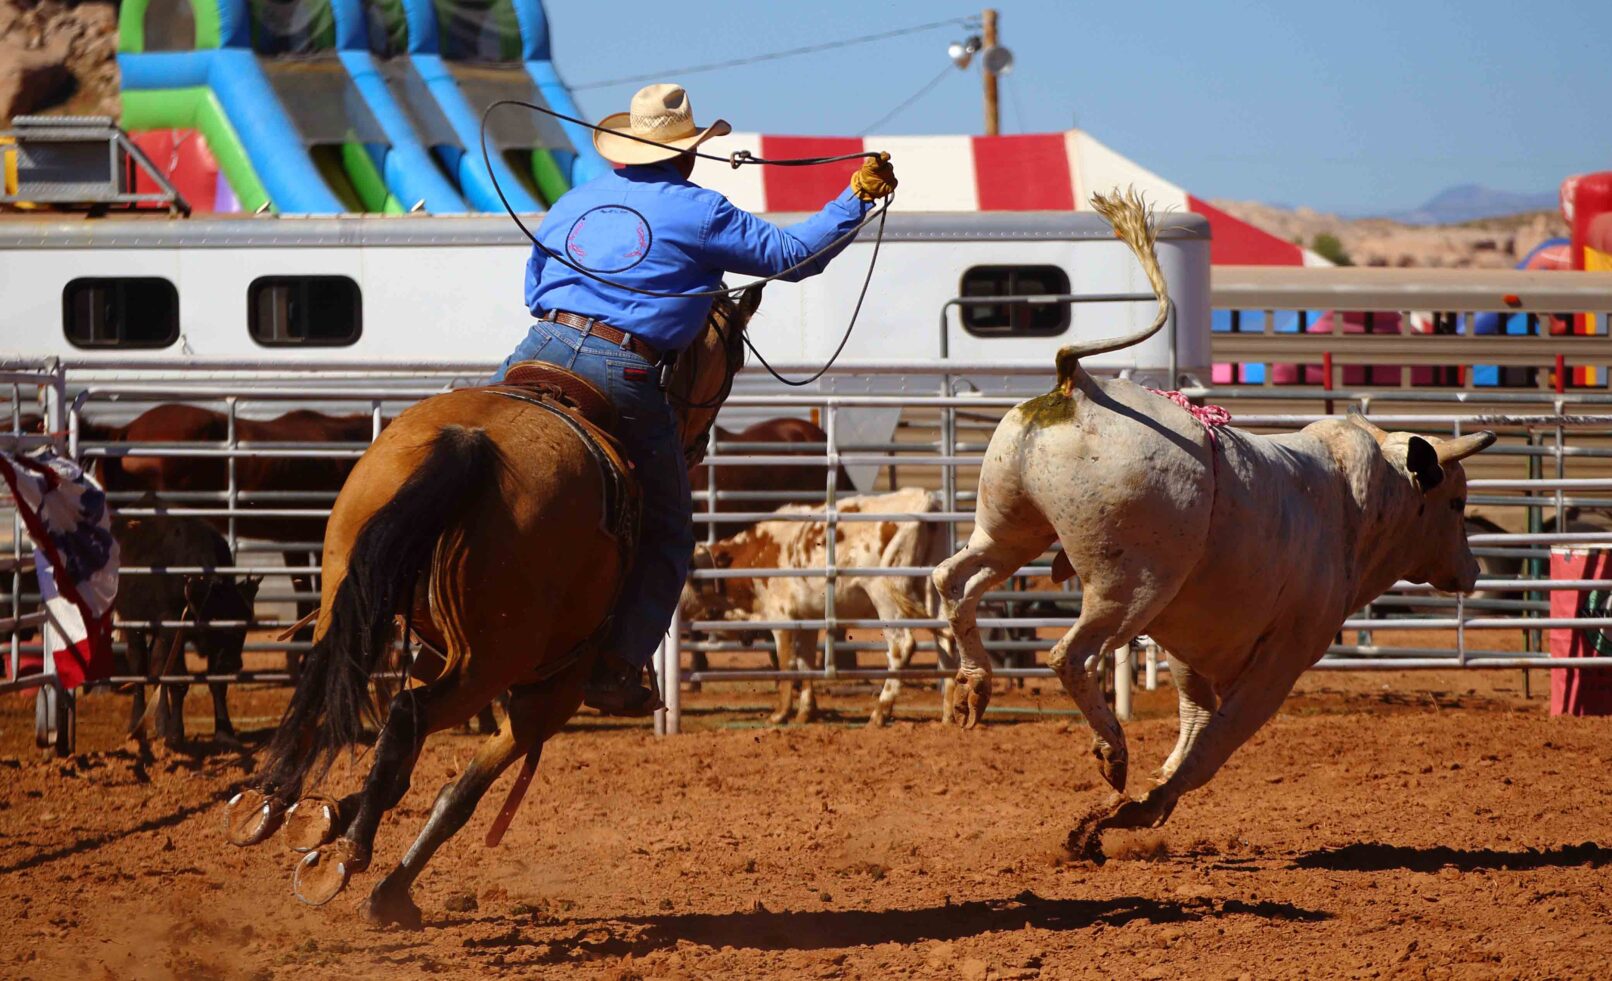 Chasing a bull at a rodeo, Utah, USA